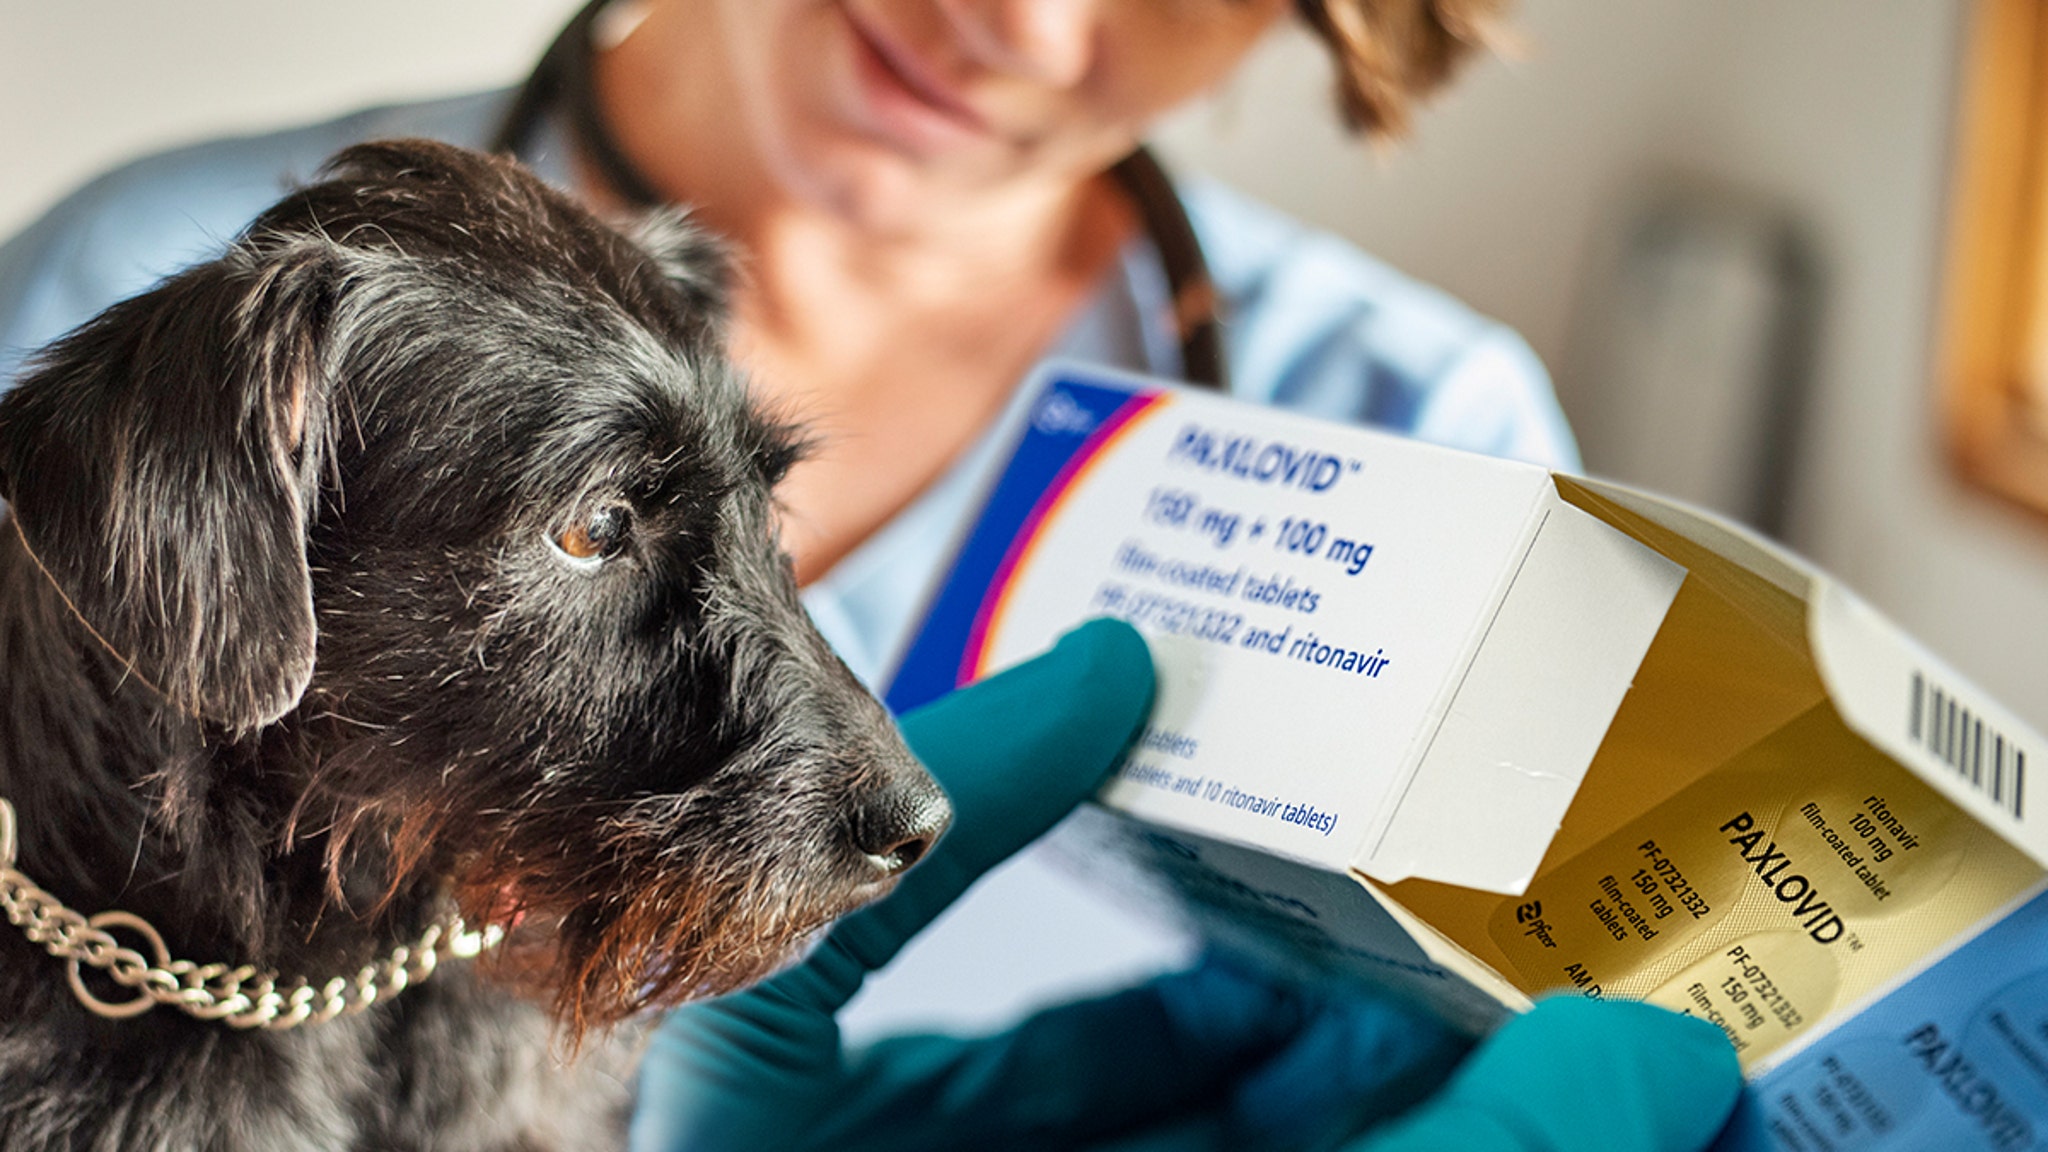 Veterinario prescripción medicamentos COVID a perros para salvarlos de una enfermedad misteriosa

 CINEINFO12